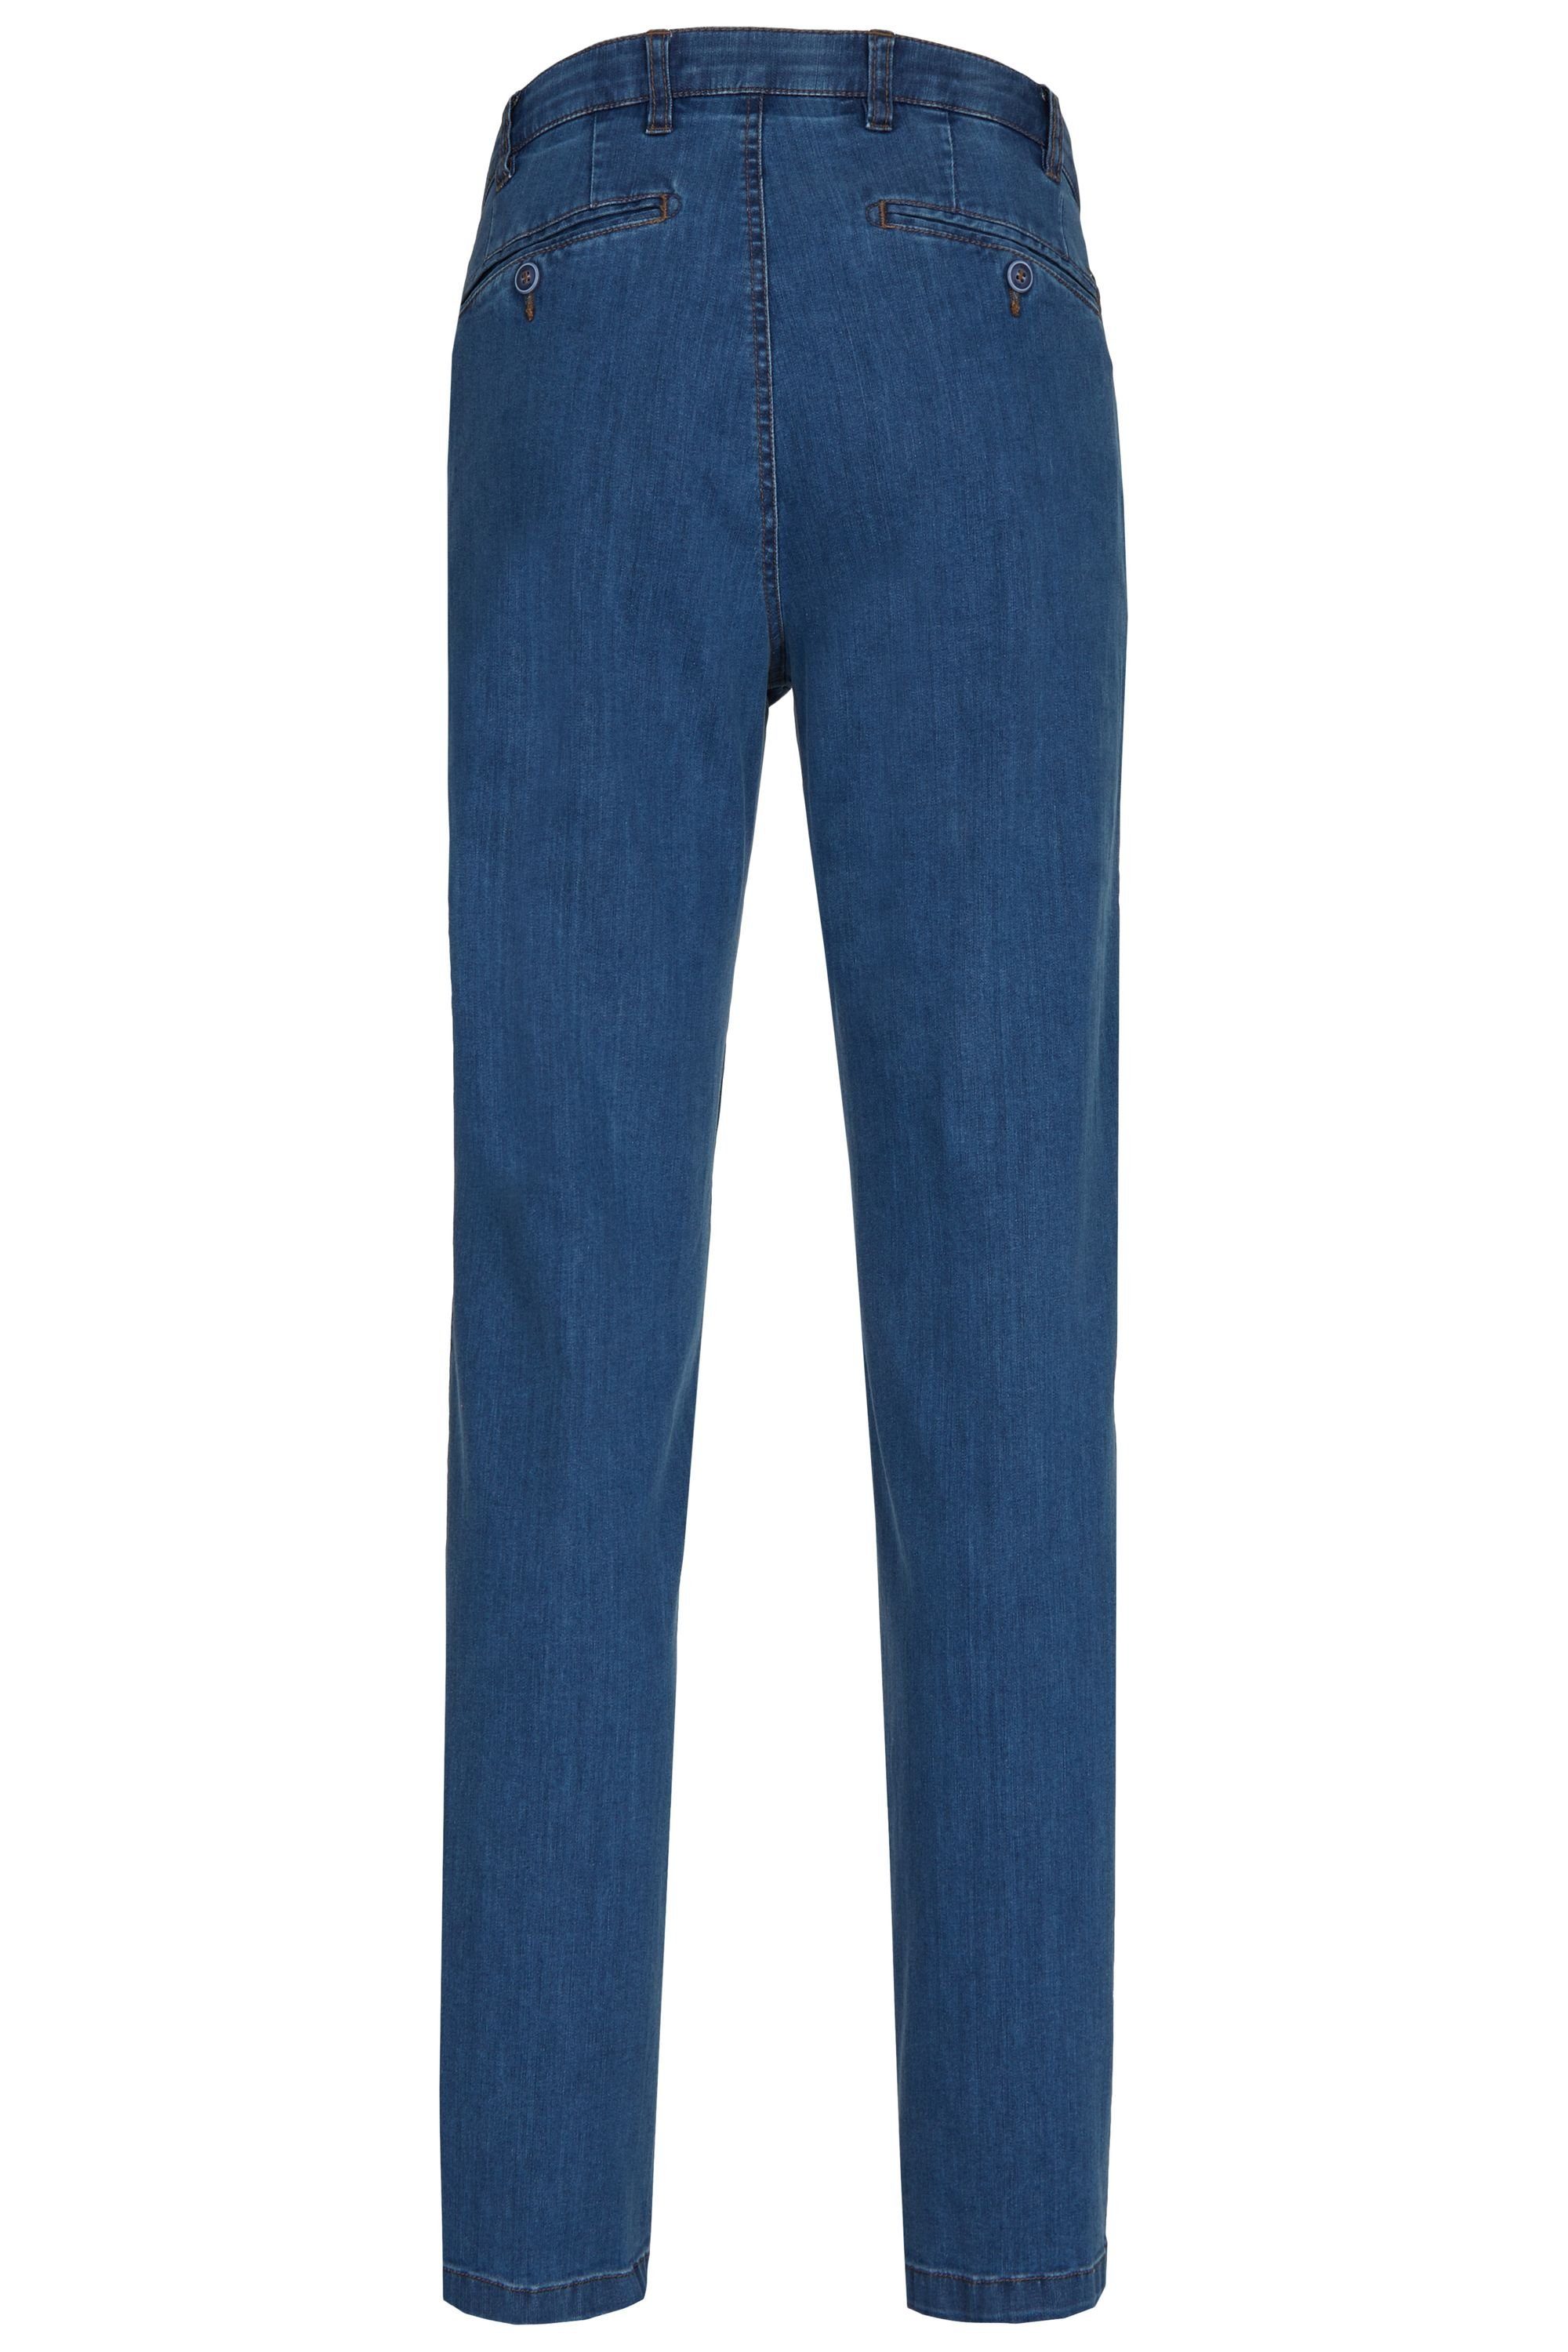 Flex Herren aubi: Fit Bequeme Stretch Perfect High Modell Hose aus Jeans Jeans stone Baumwolle Sommer 526 (46) aubi